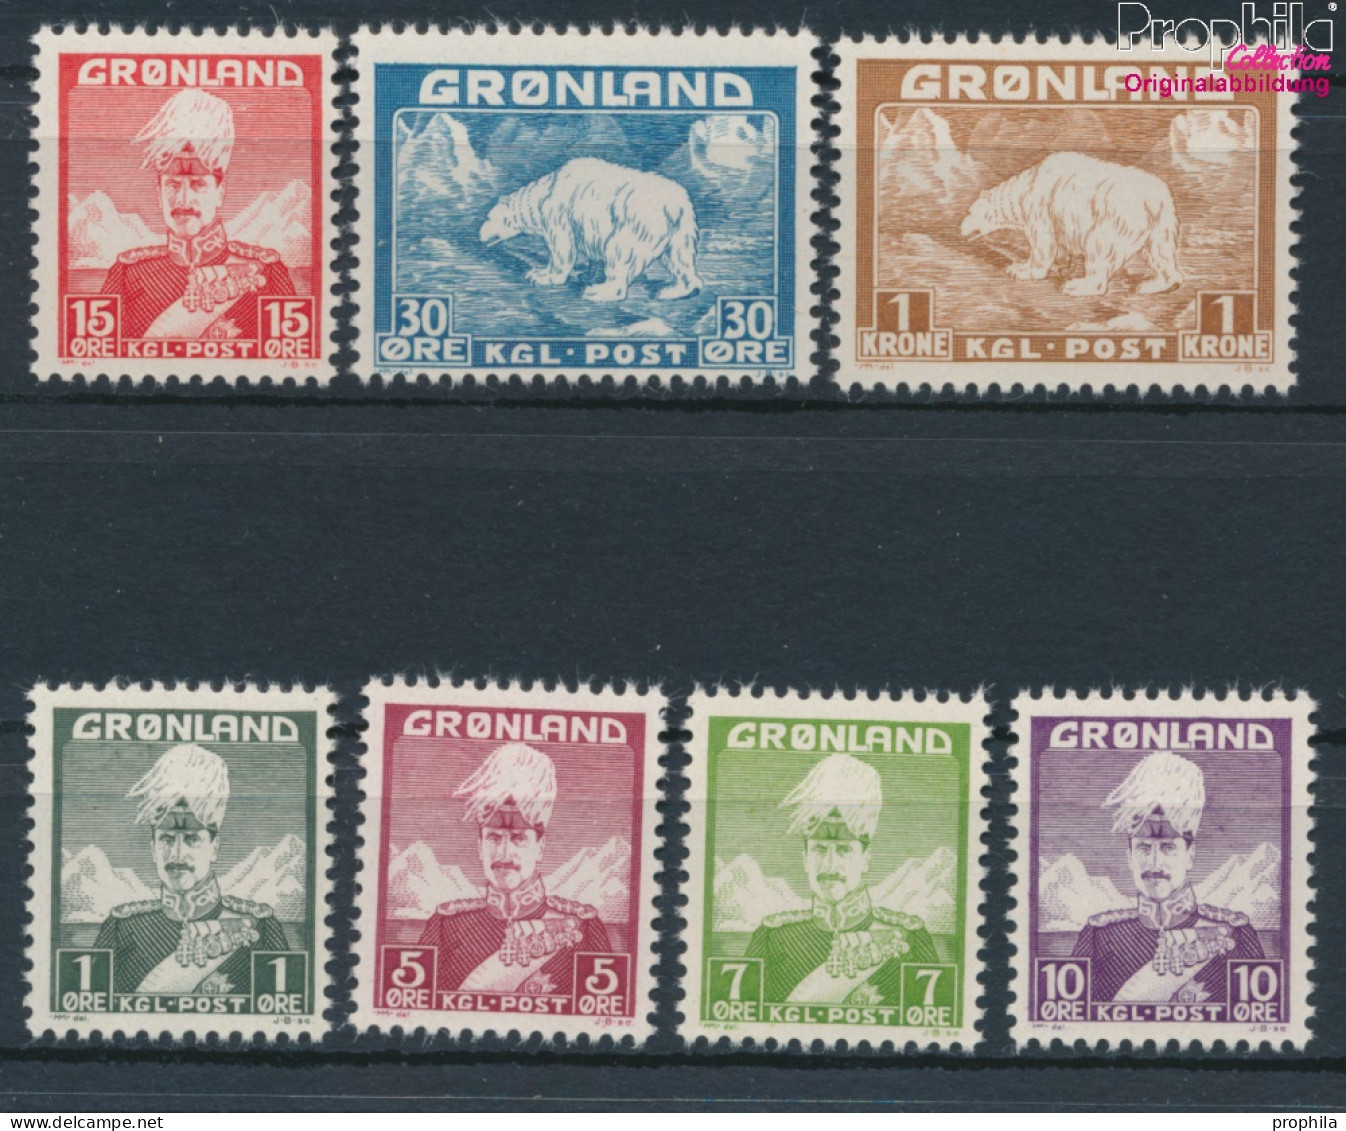 Dänemark - Grönland Postfrisch Christian X. 1938 König Christian X.  (10174221 - Usados